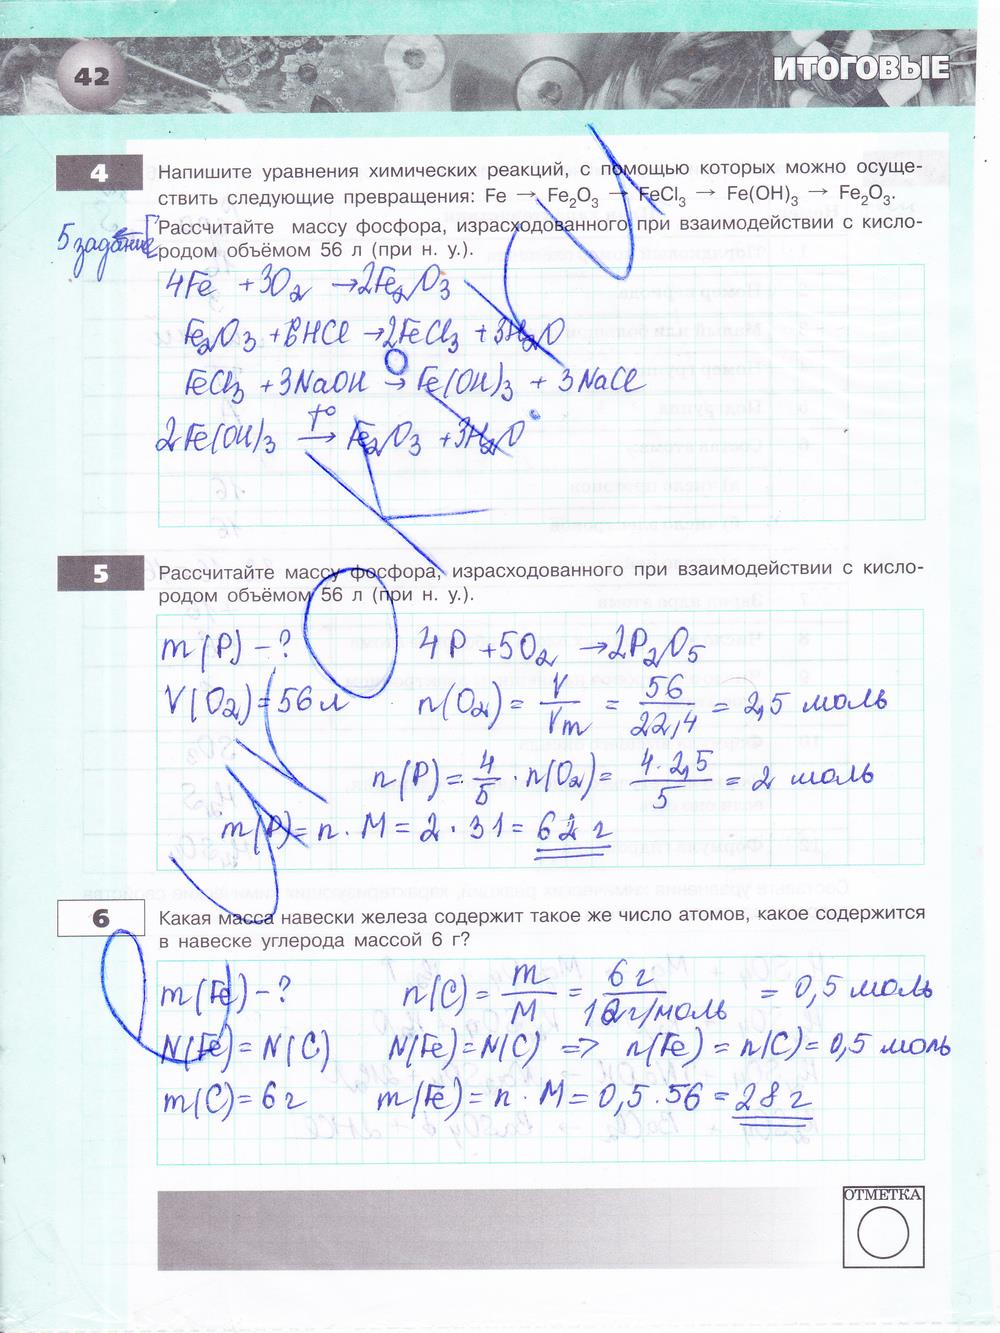 гдз 8 класс тетрадь-экзаменатор страница 42 химия Бобылева, Бирюлина